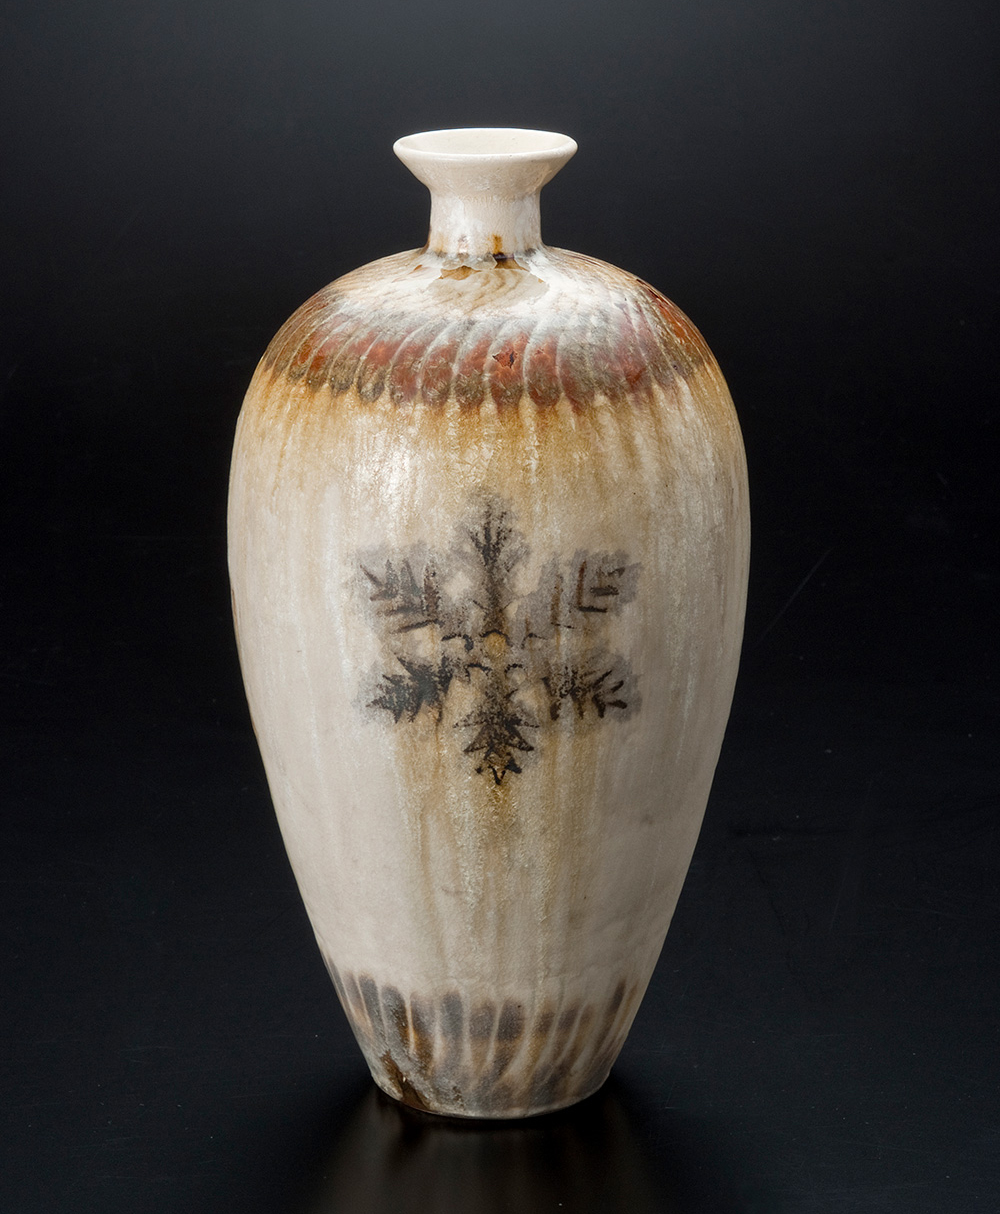 小森忍《雪結晶紋花瓶》<br>1957年(昭和32年)左右 <br>陶瓷<br>17.0×31.5cm 